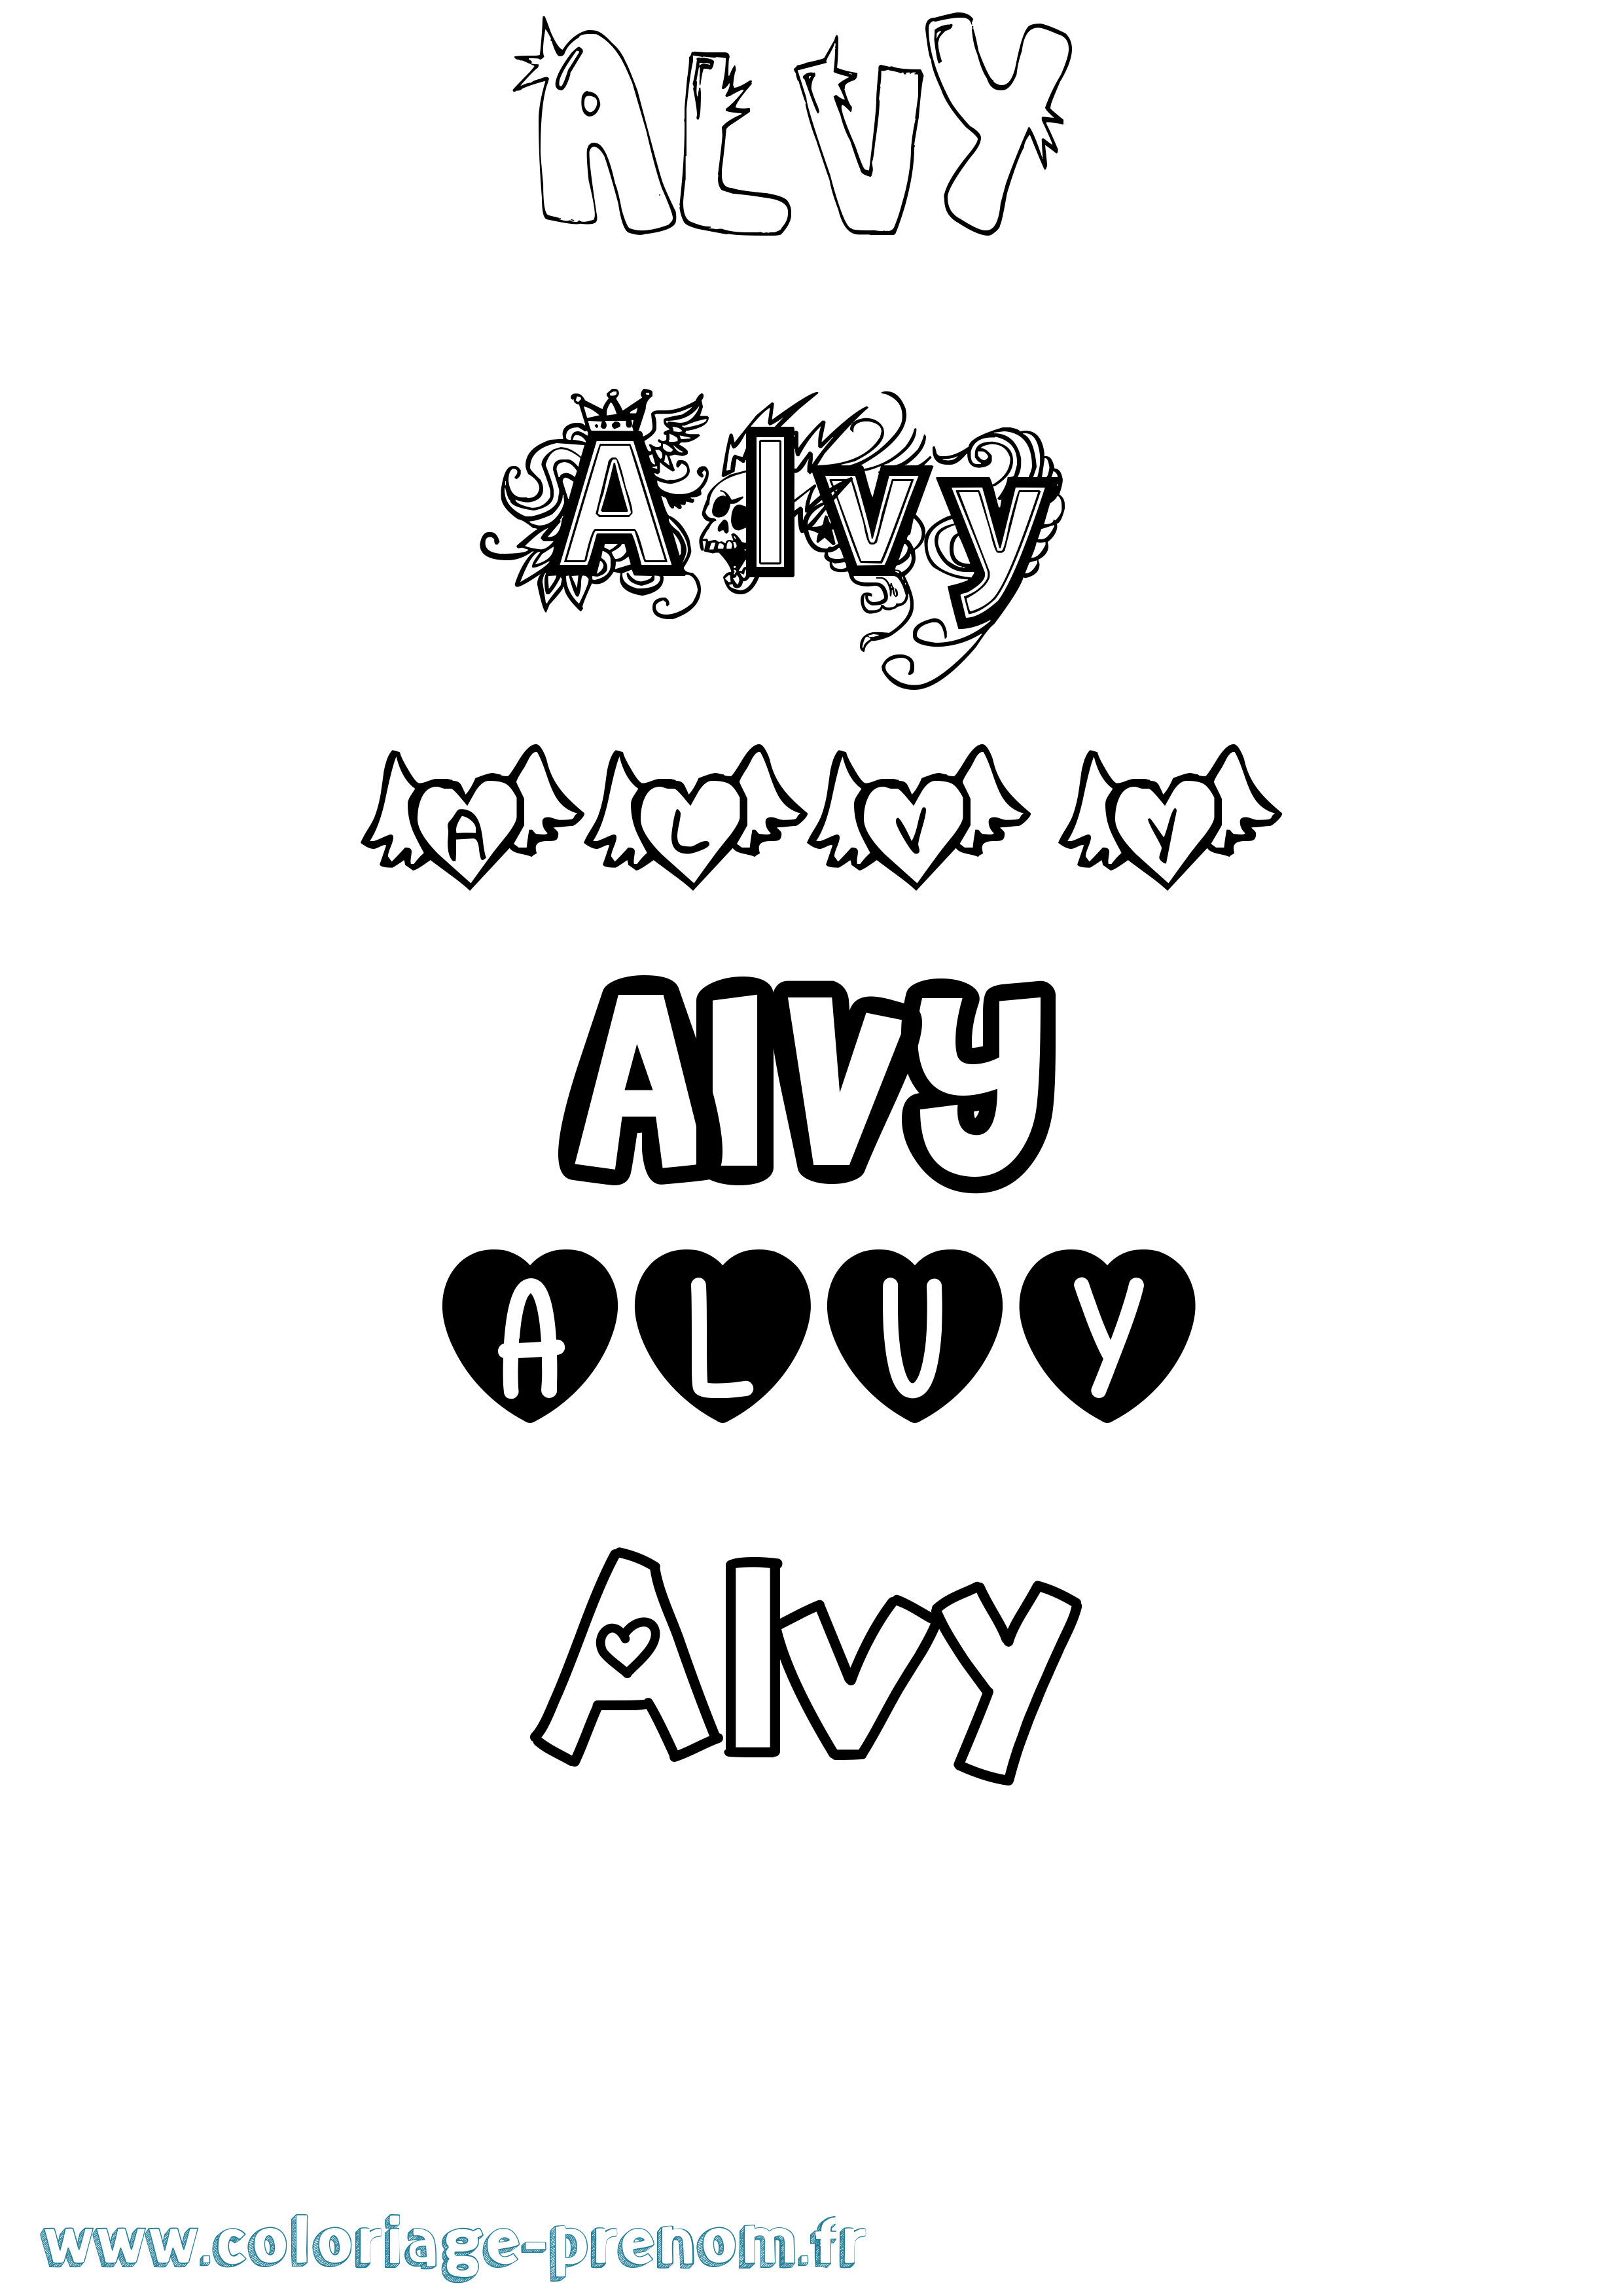 Coloriage prénom Alvy Girly